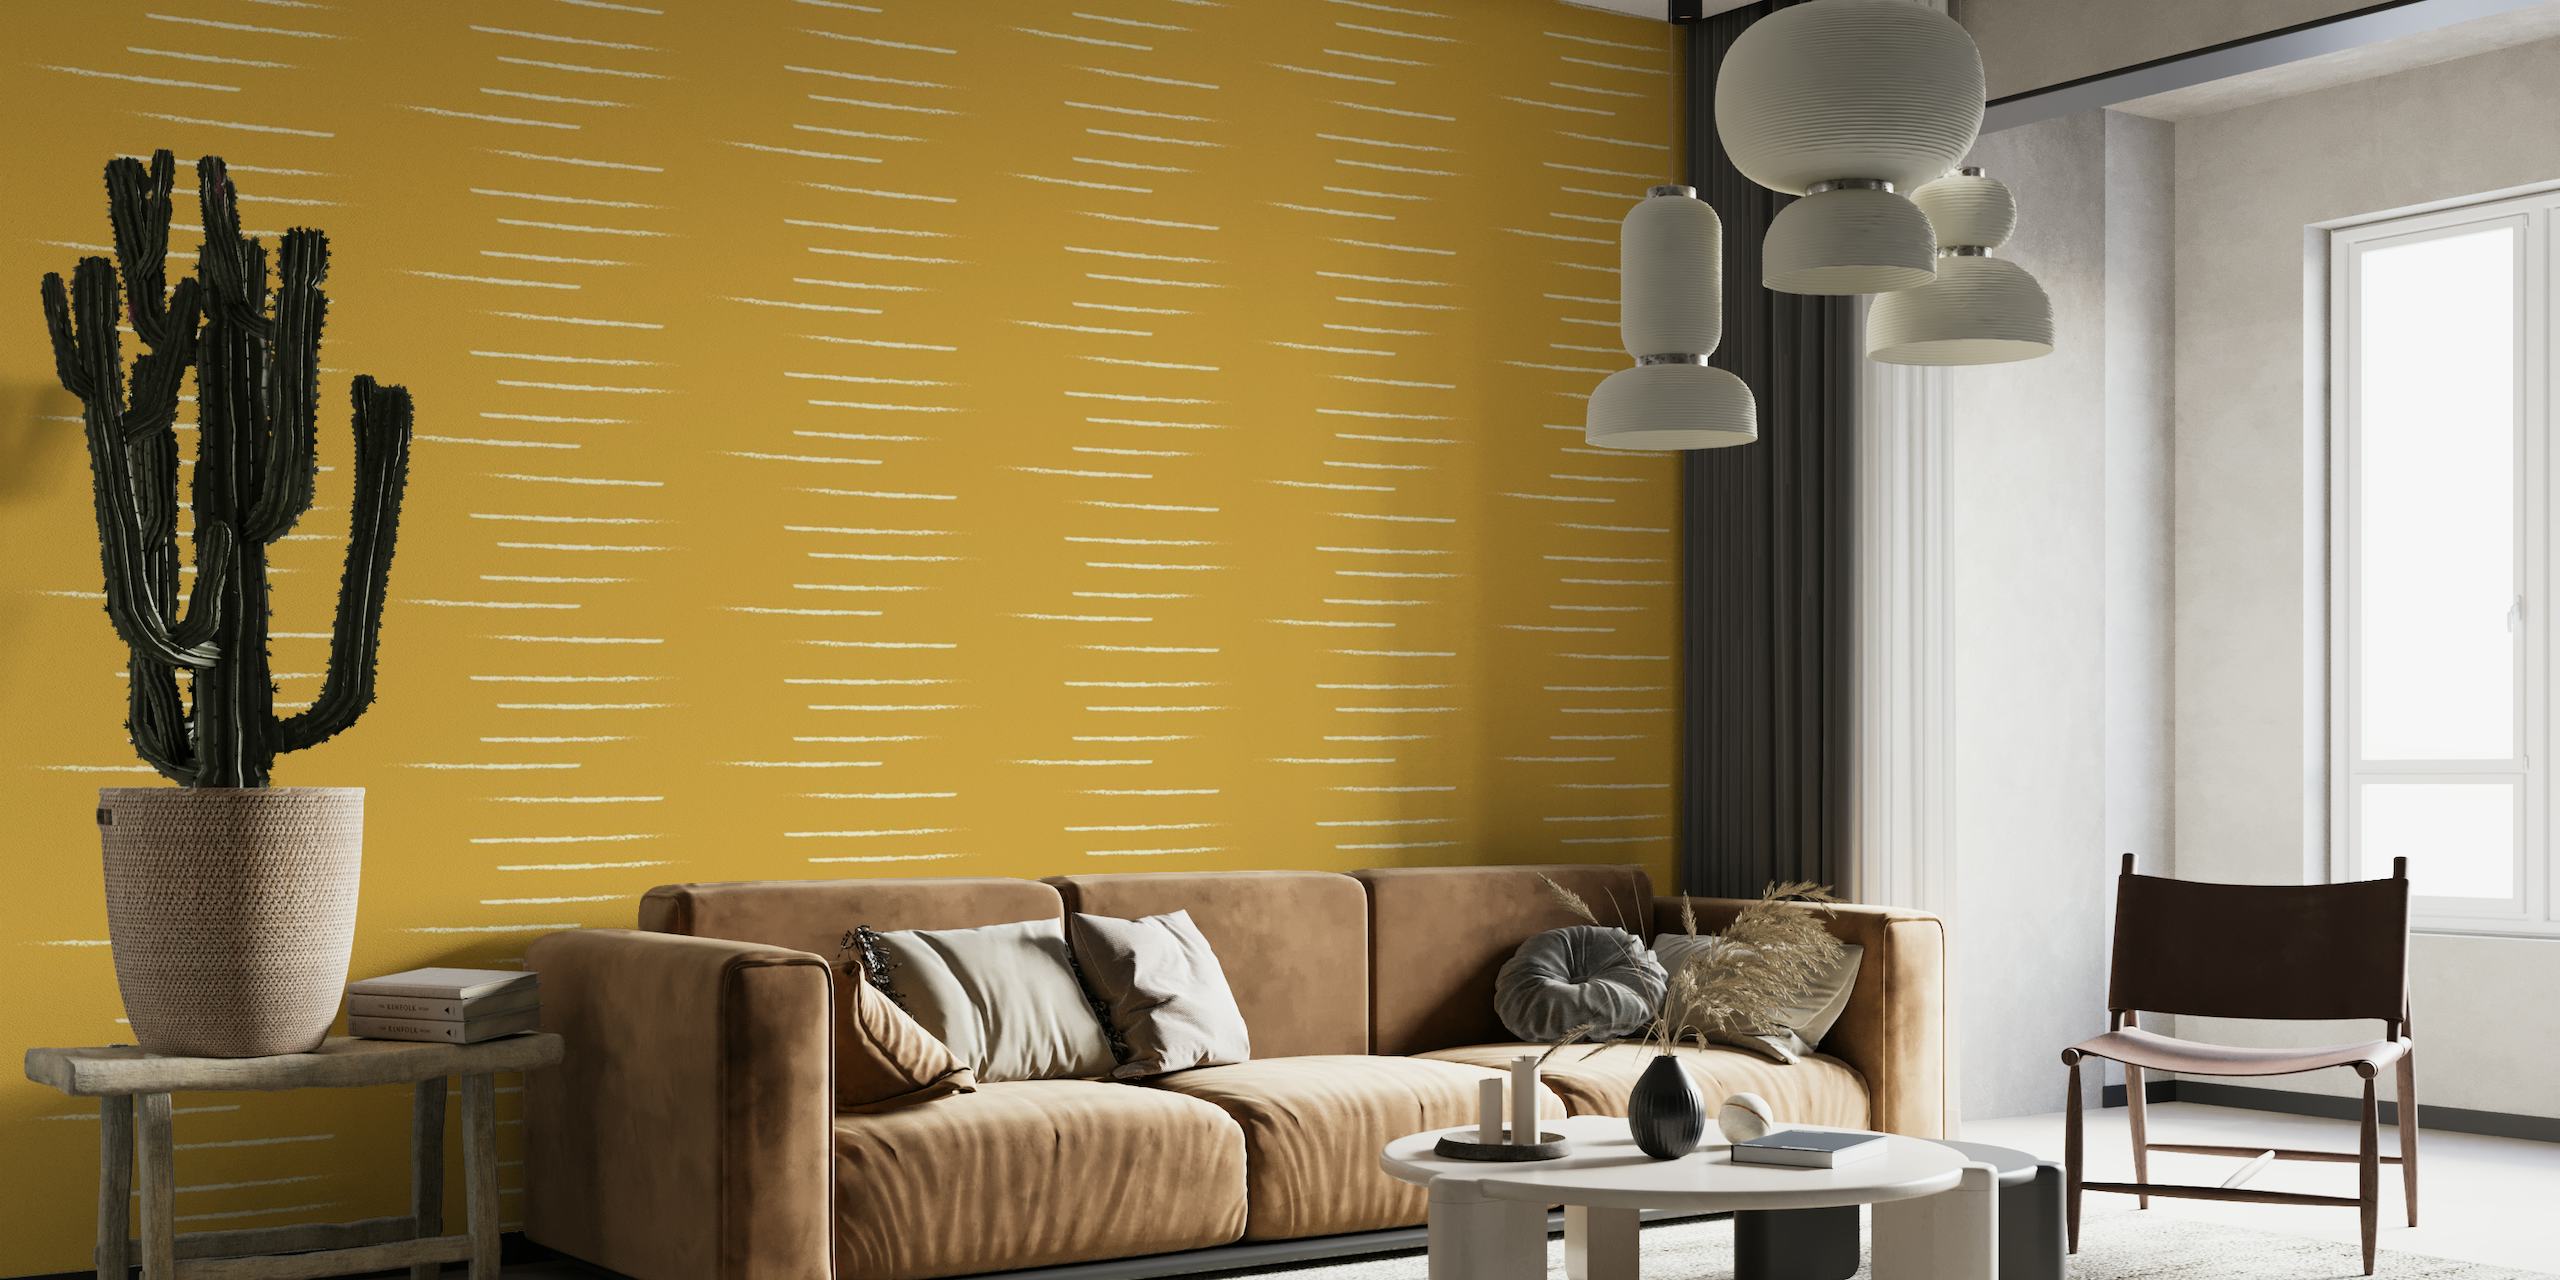 Horizontal gestreifte Tapete in Senfbeigetönen spiegelt einen warmen und minimalistischen Stil wider